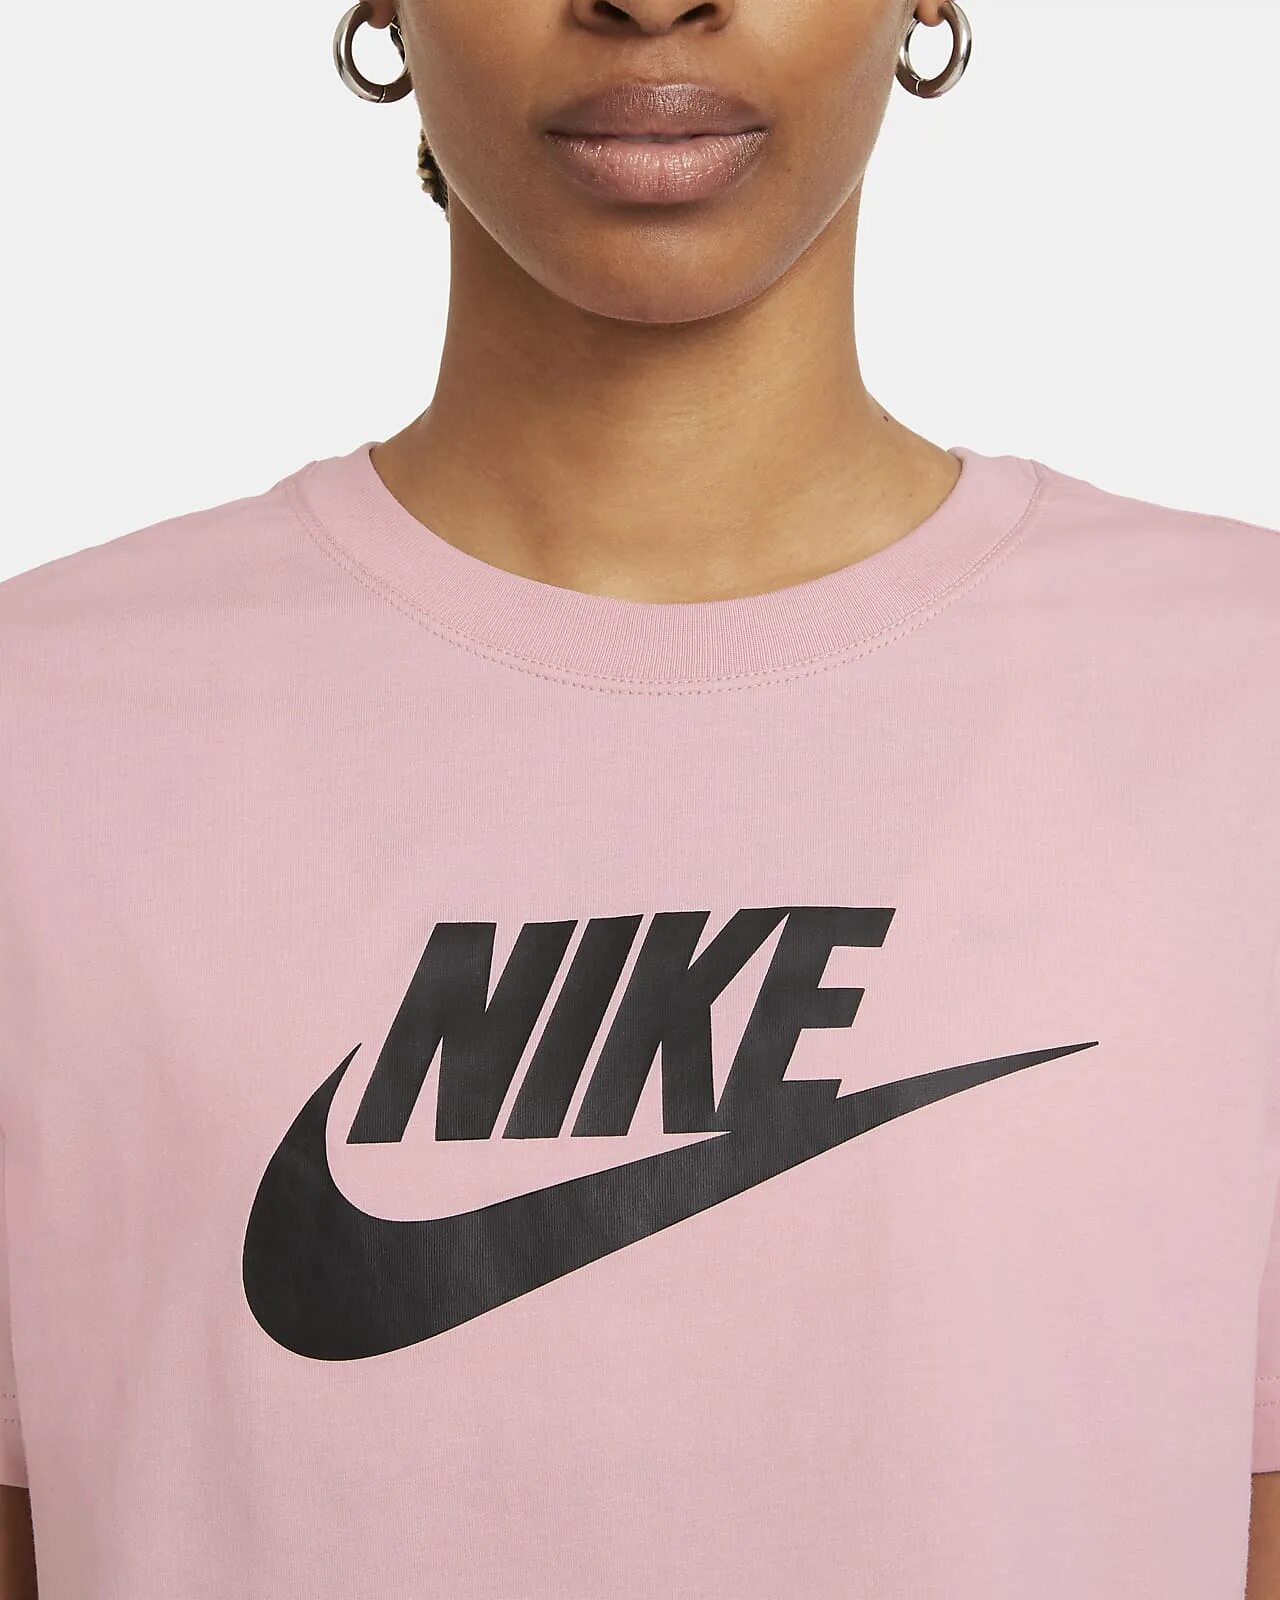 Футболка женская Nike Sportswear. Nike Sportswear Essential футболка. Футболка Nike Sportswear Essentials Tee. Футболка Nike Sportswear белая. Найк женщины